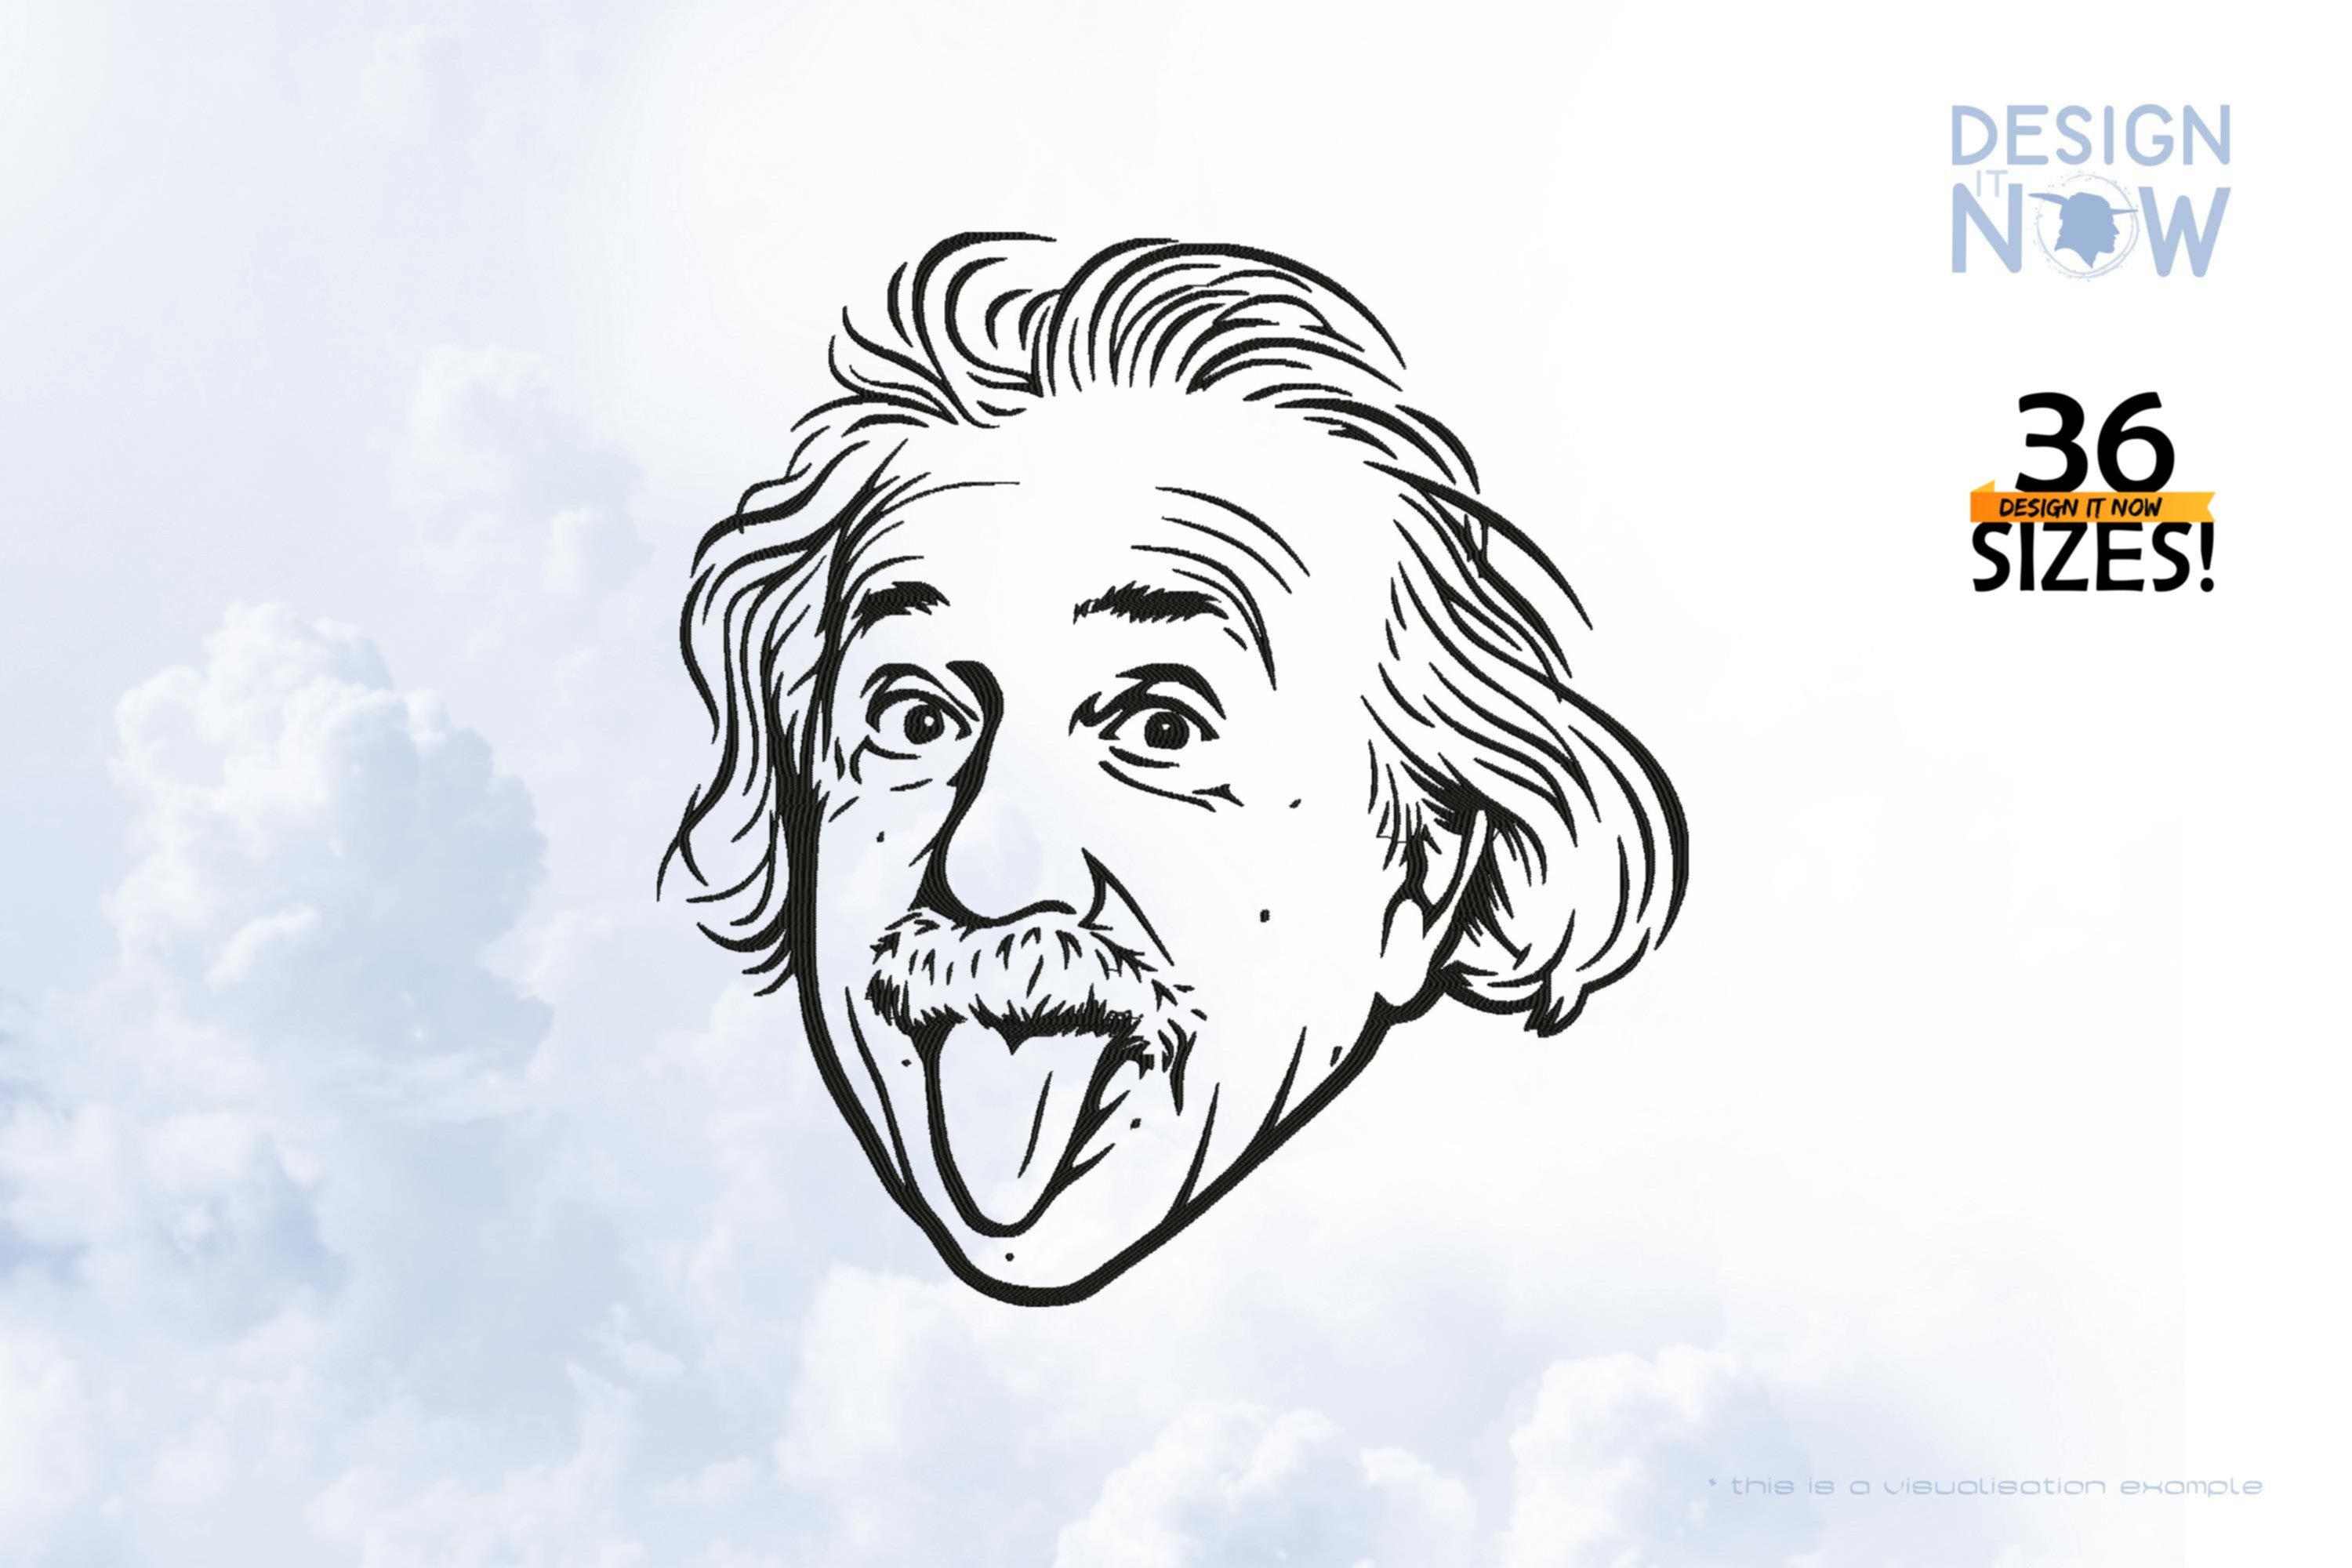 Tribute To Physicist A. Einstein aka Albert Einstein I